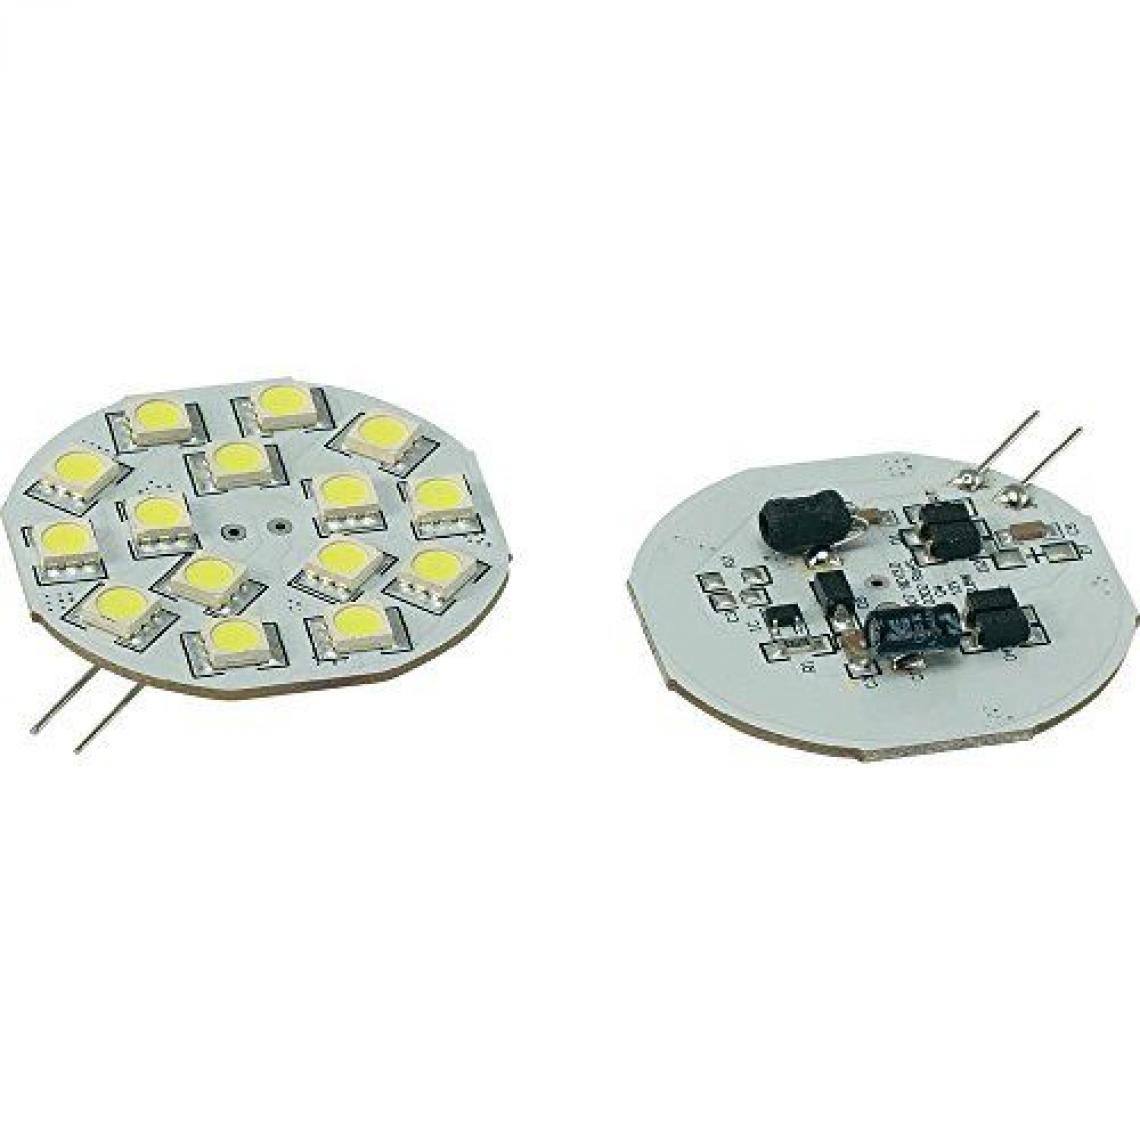 Inconnu - Ampoule LED unicolore G4 Renkforce 792409 à broches 2.8 W = 15 W blanc froid (Ø x L) 44.3 mm x 54.3 mm EEC: n/a 1 pc(s) - Ampoules LED